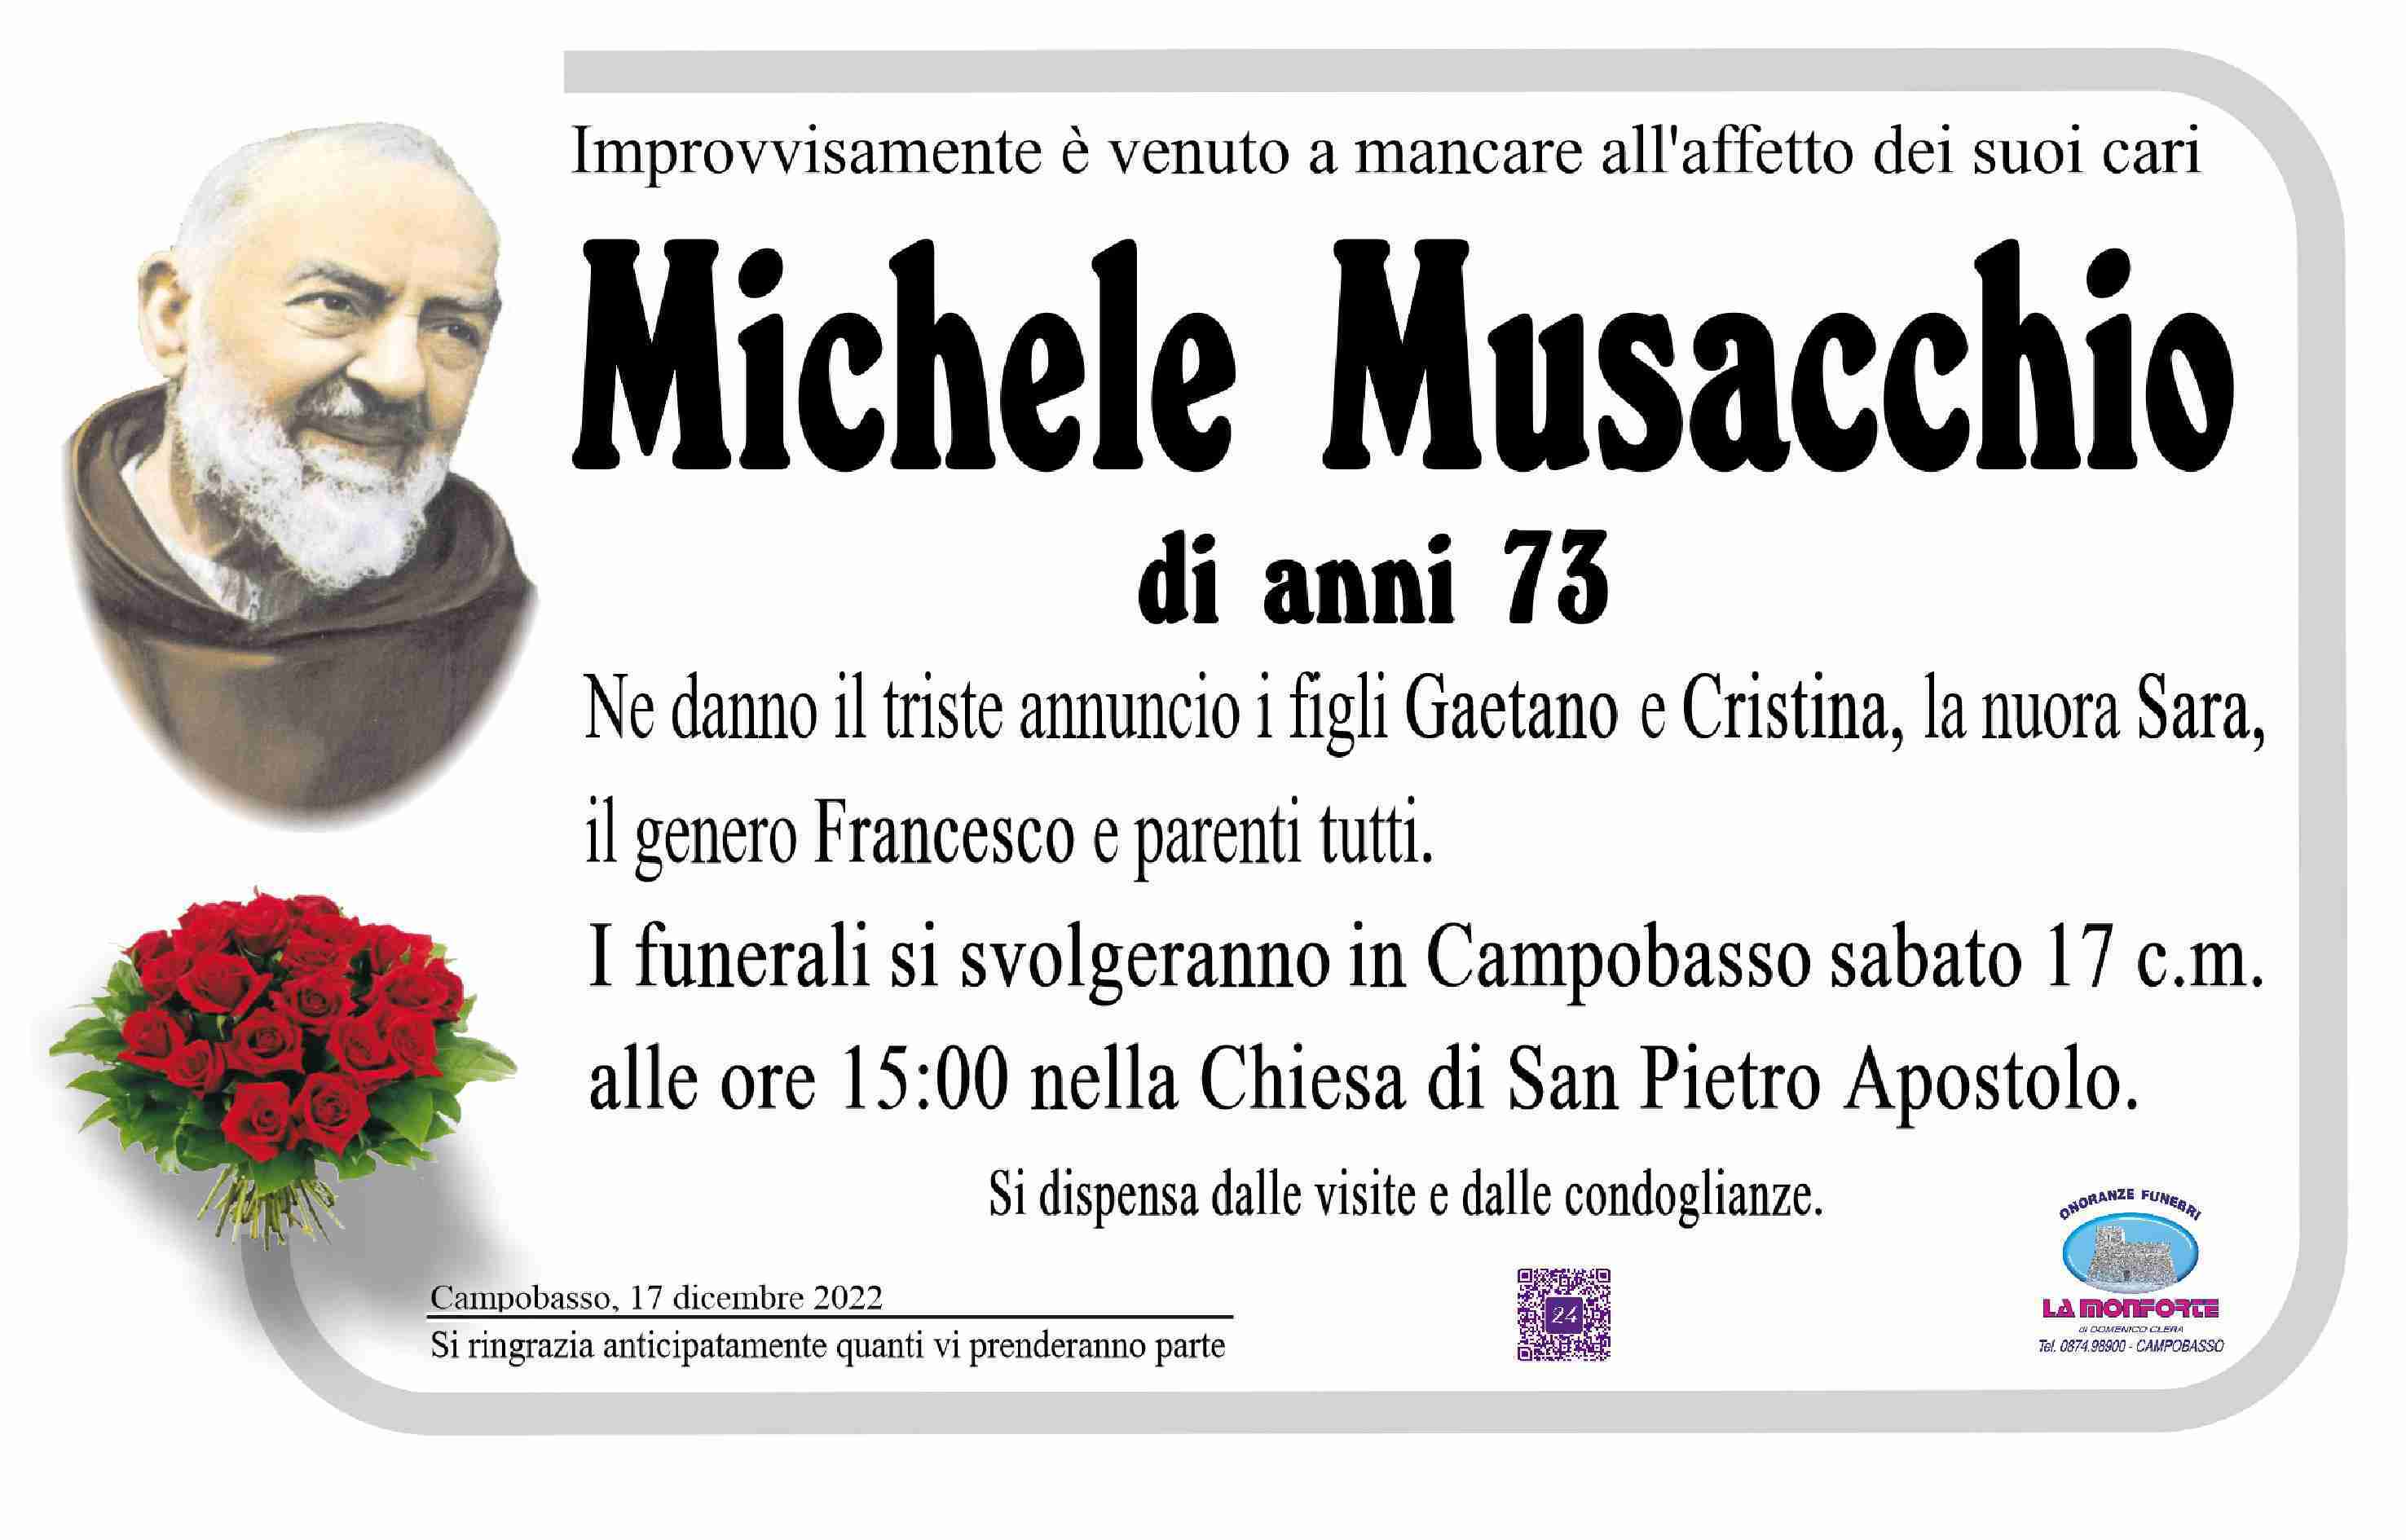 Michele Musacchio